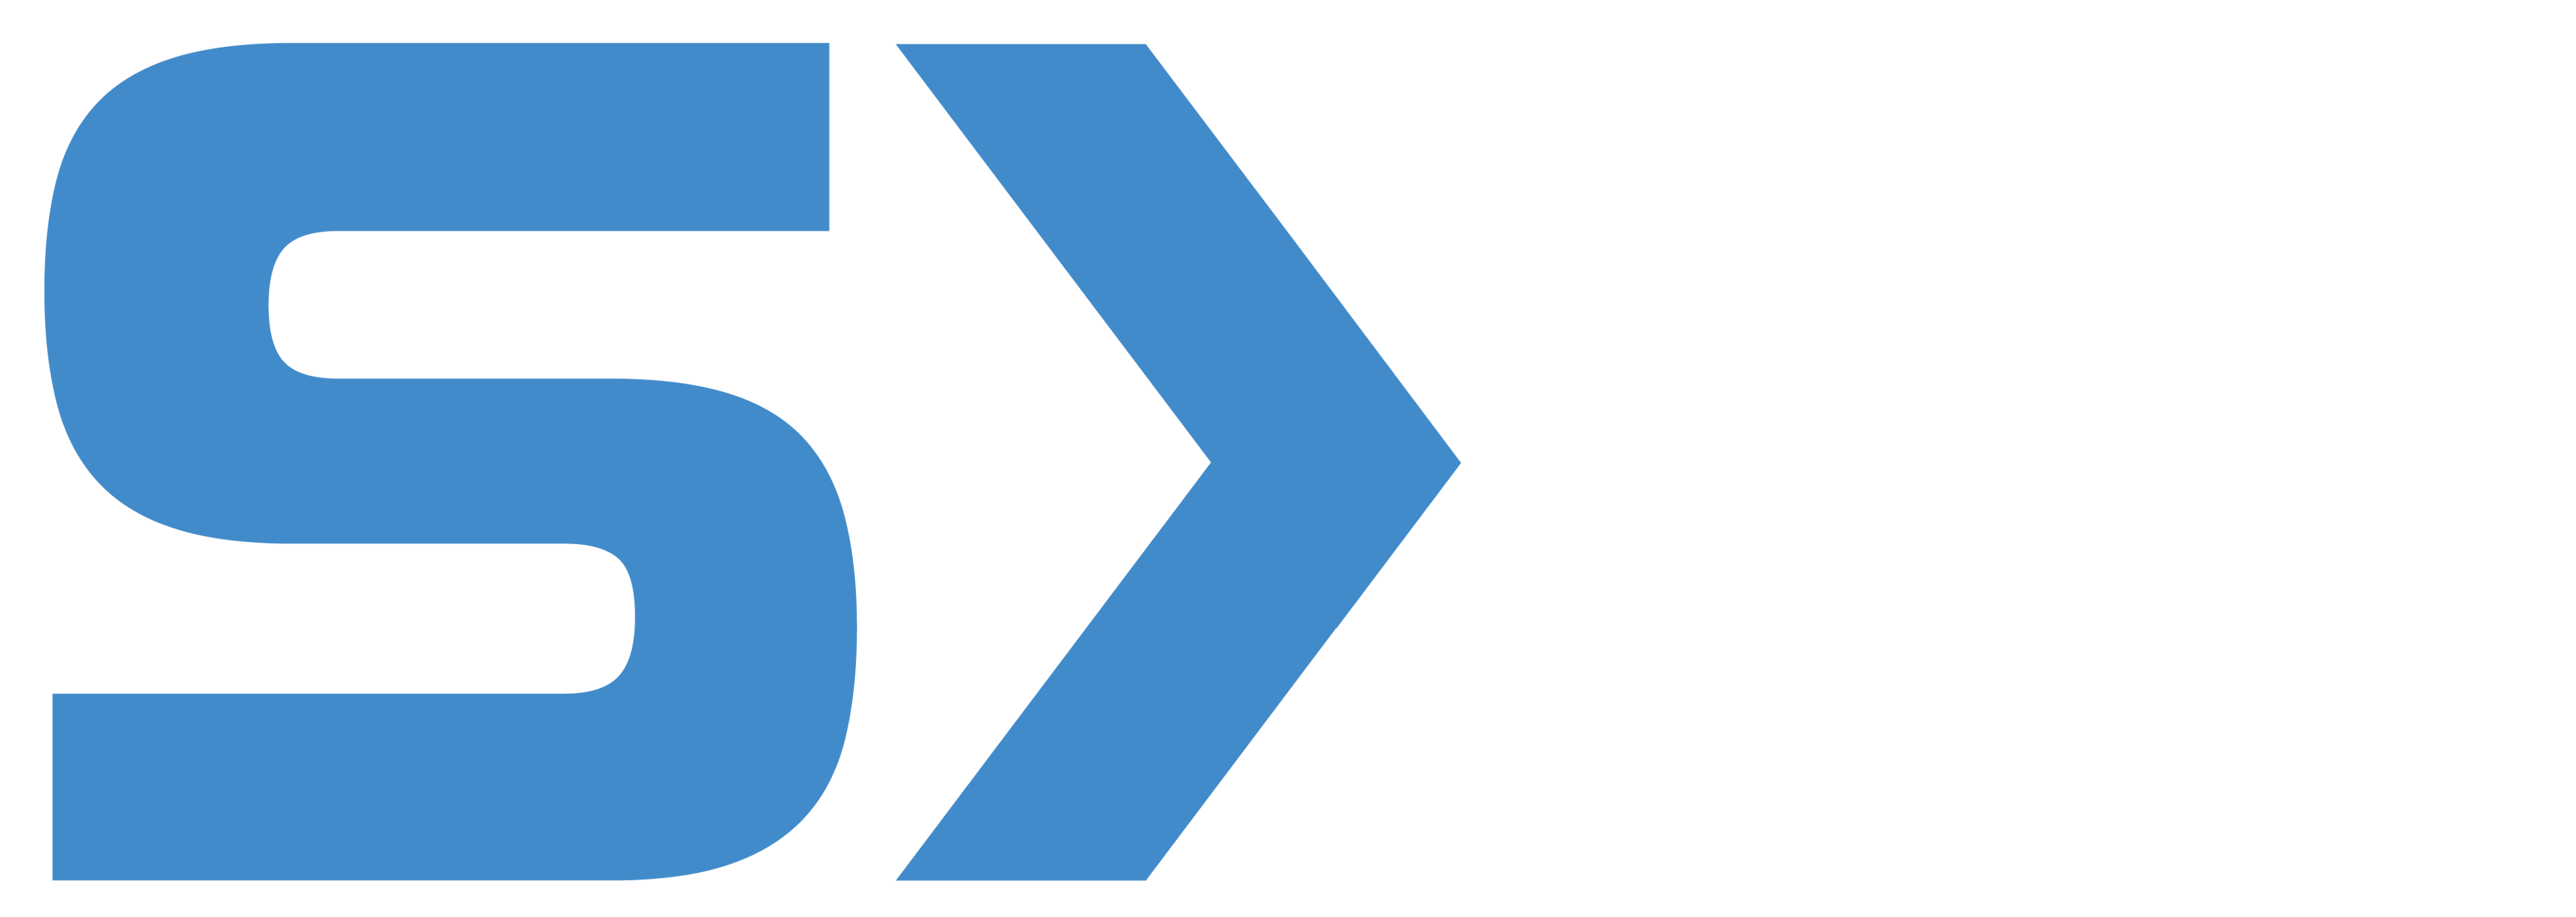 SouthXchange logo